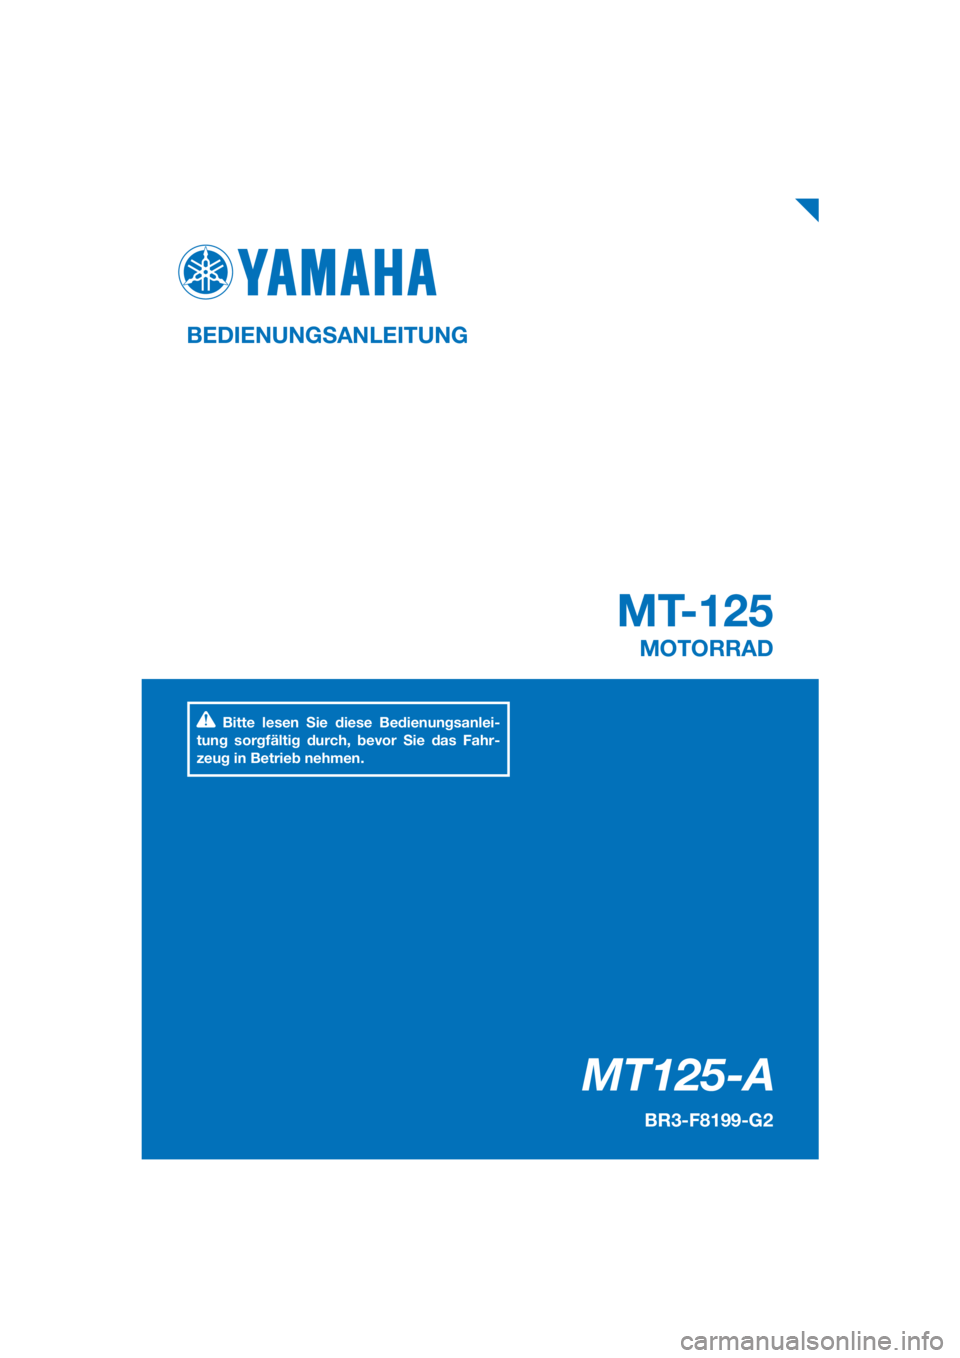 YAMAHA MT-125 2018  Betriebsanleitungen (in German) PANTONE285C
MT125-A
MT-125
BEDIENUNGSANLEITUNG
BR3-F8199-G2
MOTORRAD
Bitte lesen Sie diese Bedienungsanlei-
tung sorgfältig durch, bevor Sie das Fahr-
zeug in Betrieb nehmen.
[German  (G)] 